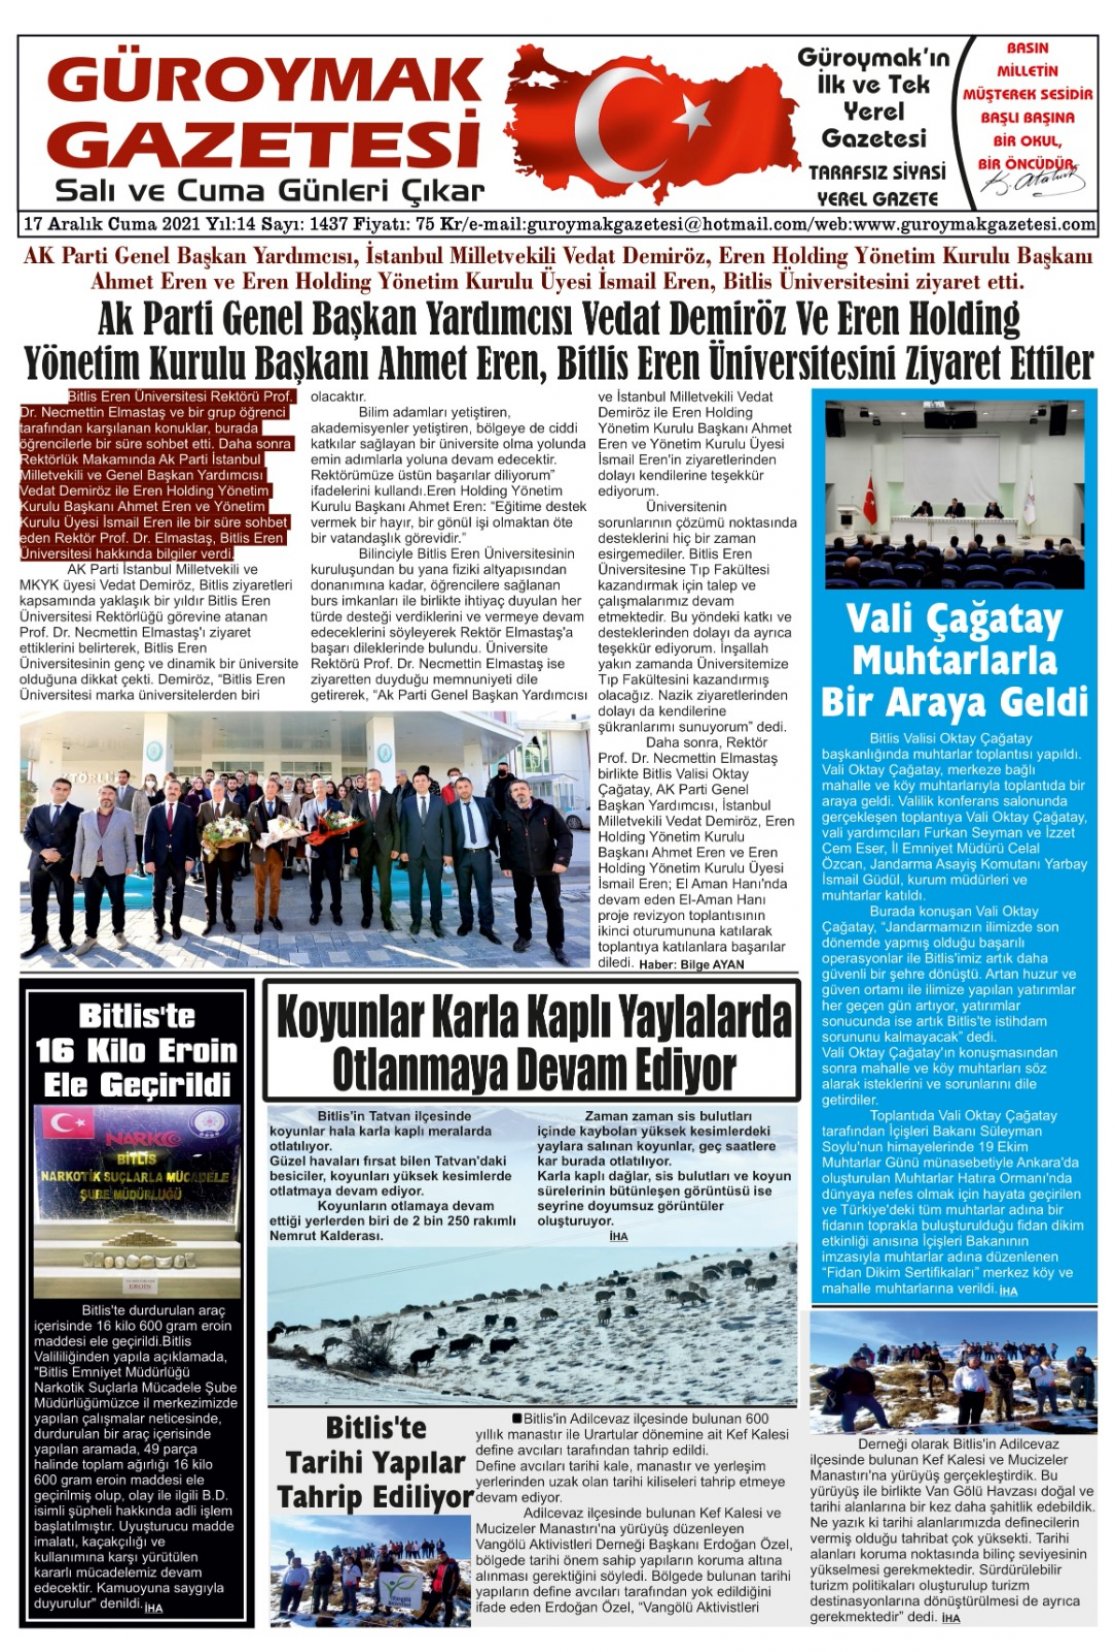 Güroymak Gazetesi WhatsApp Image 2021-12-17 at 09.06.15.jpeg Sayılı Gazete Küpürü